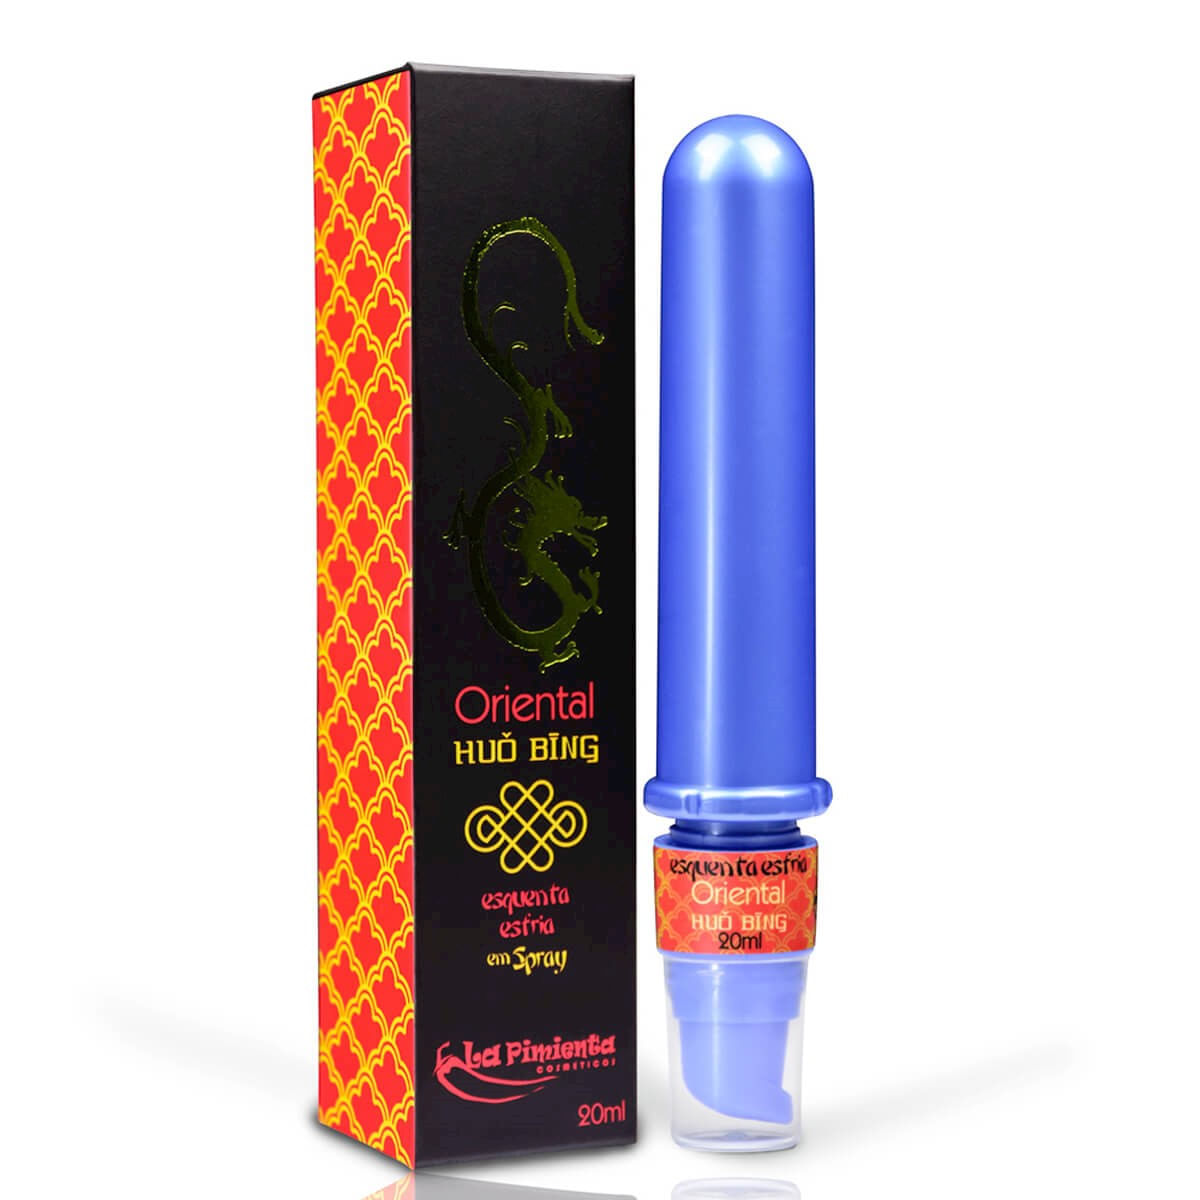 Oriental Huo Bing Spray para Massagem 20ml La Pimienta